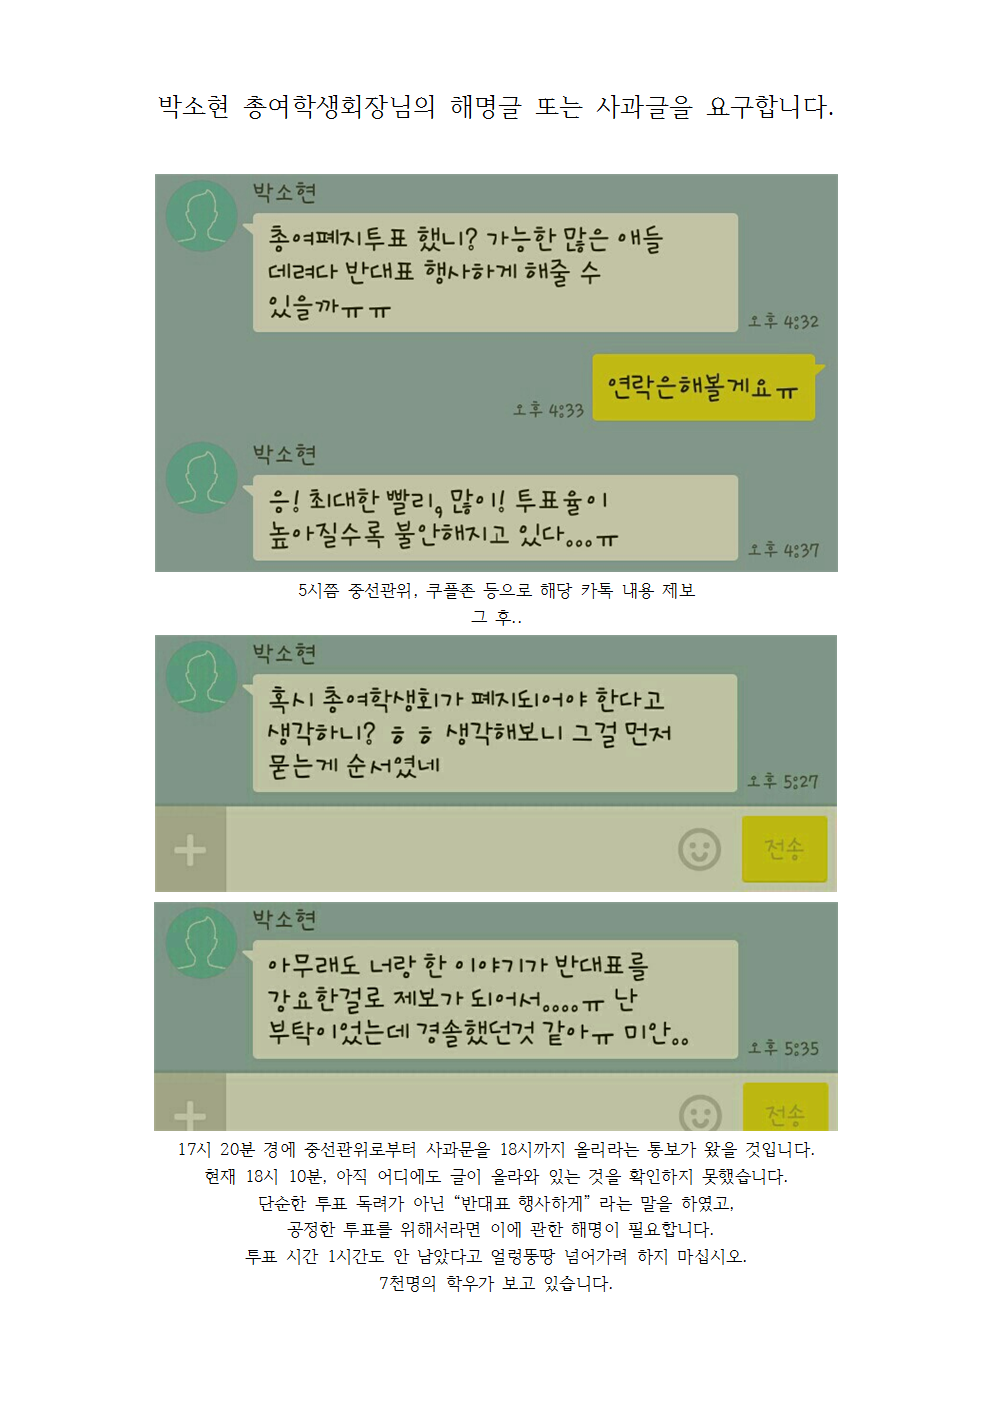 박소현 총여학생회장님의 해명글 또는 사과글을 요구합니다001.png